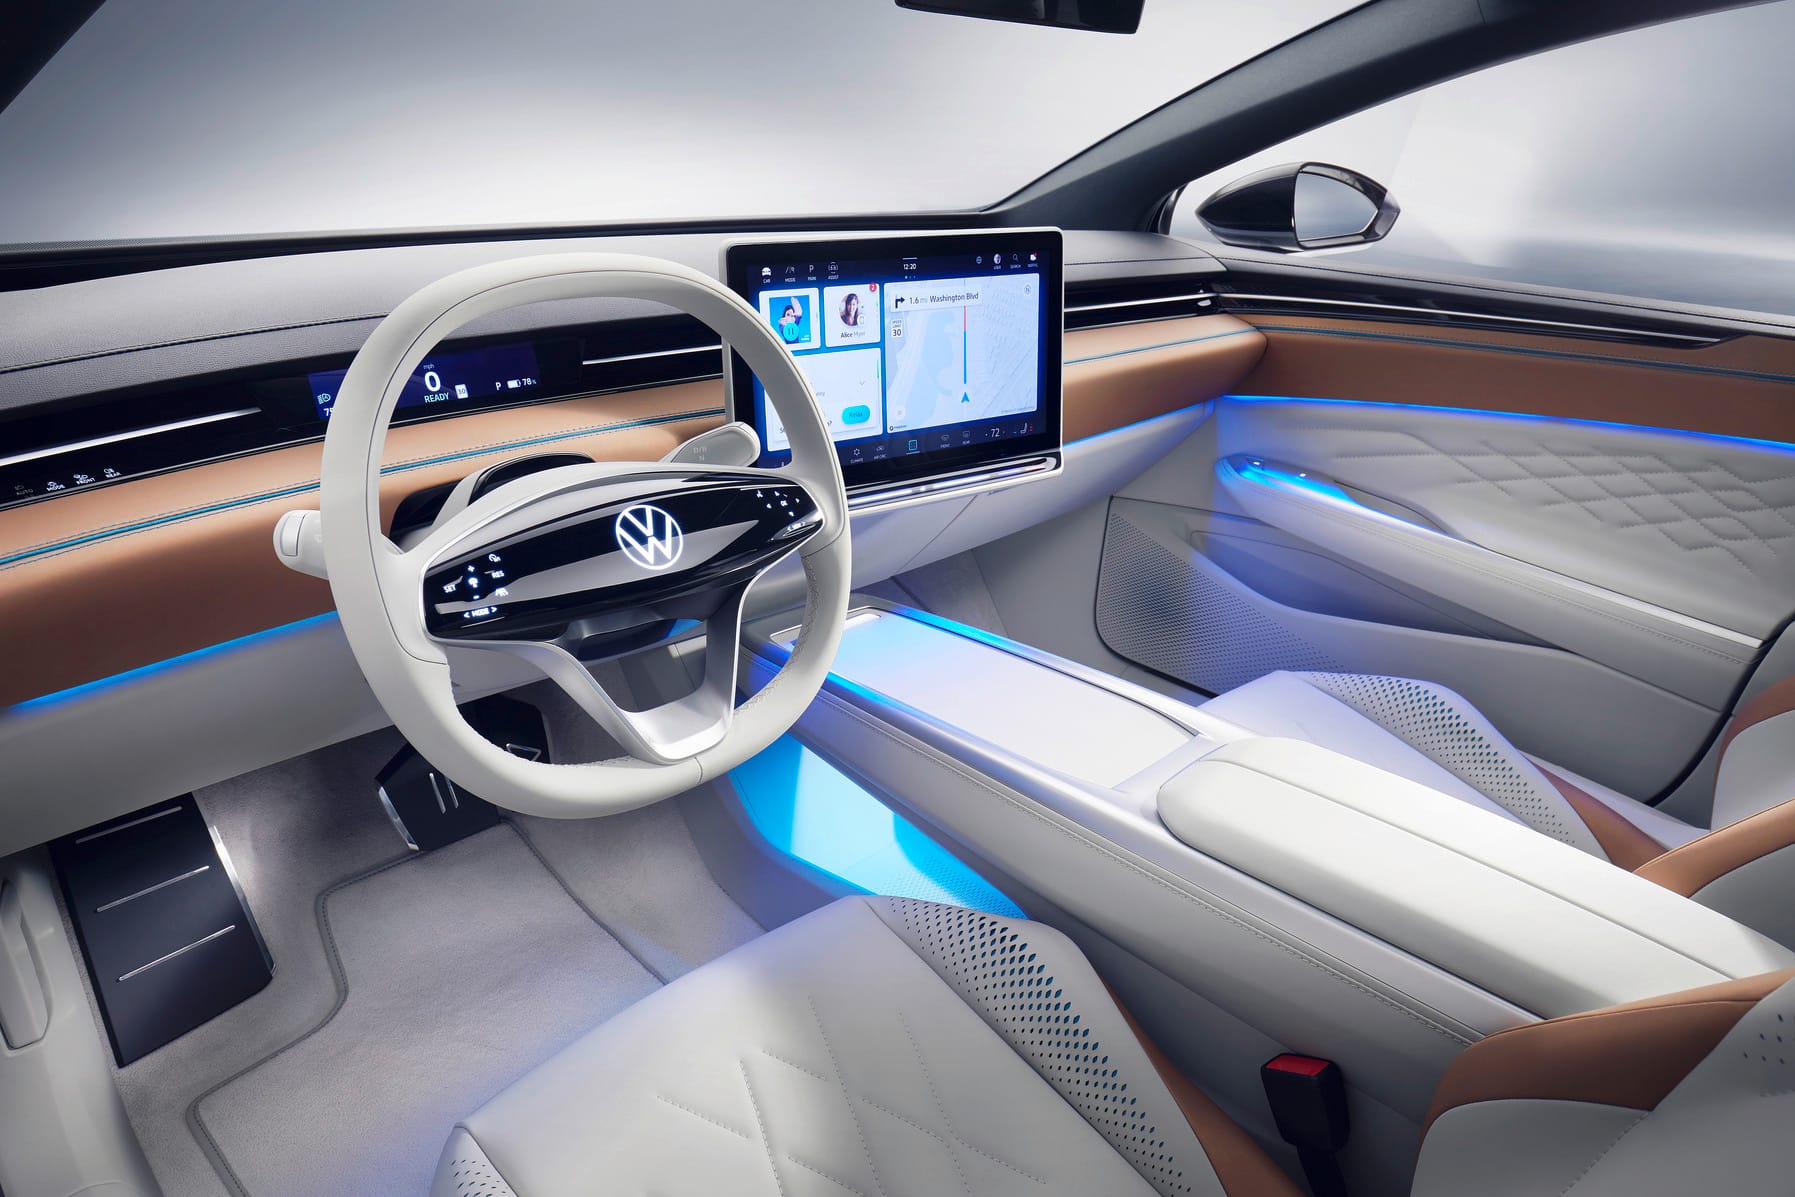 Cockpit ohne Knöpfe: Bedient wird das Konzeptauto weitgehend per Touchscreen und mit Tasten am Lenkrad – oder durch Sprachbefehle.